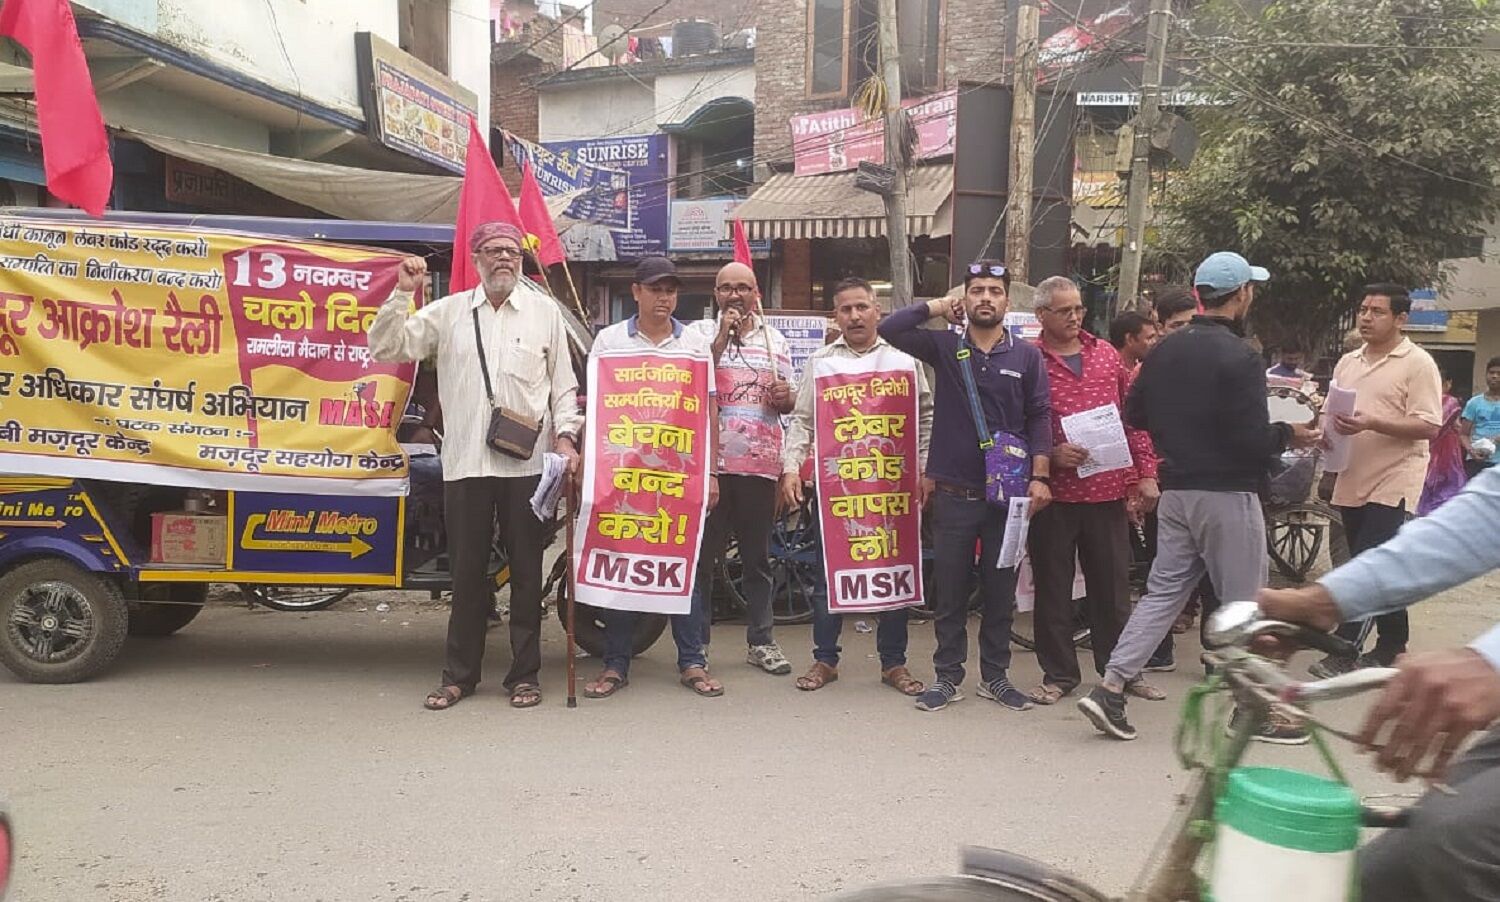 मोदीराज में मजदूरों को बंधुआ बनाने वाले 4 लेबर कोड के खिलाफ 13 नवंबर दिल्ली चलो अभियान, आक्रोश रैली का होगा आयोजन